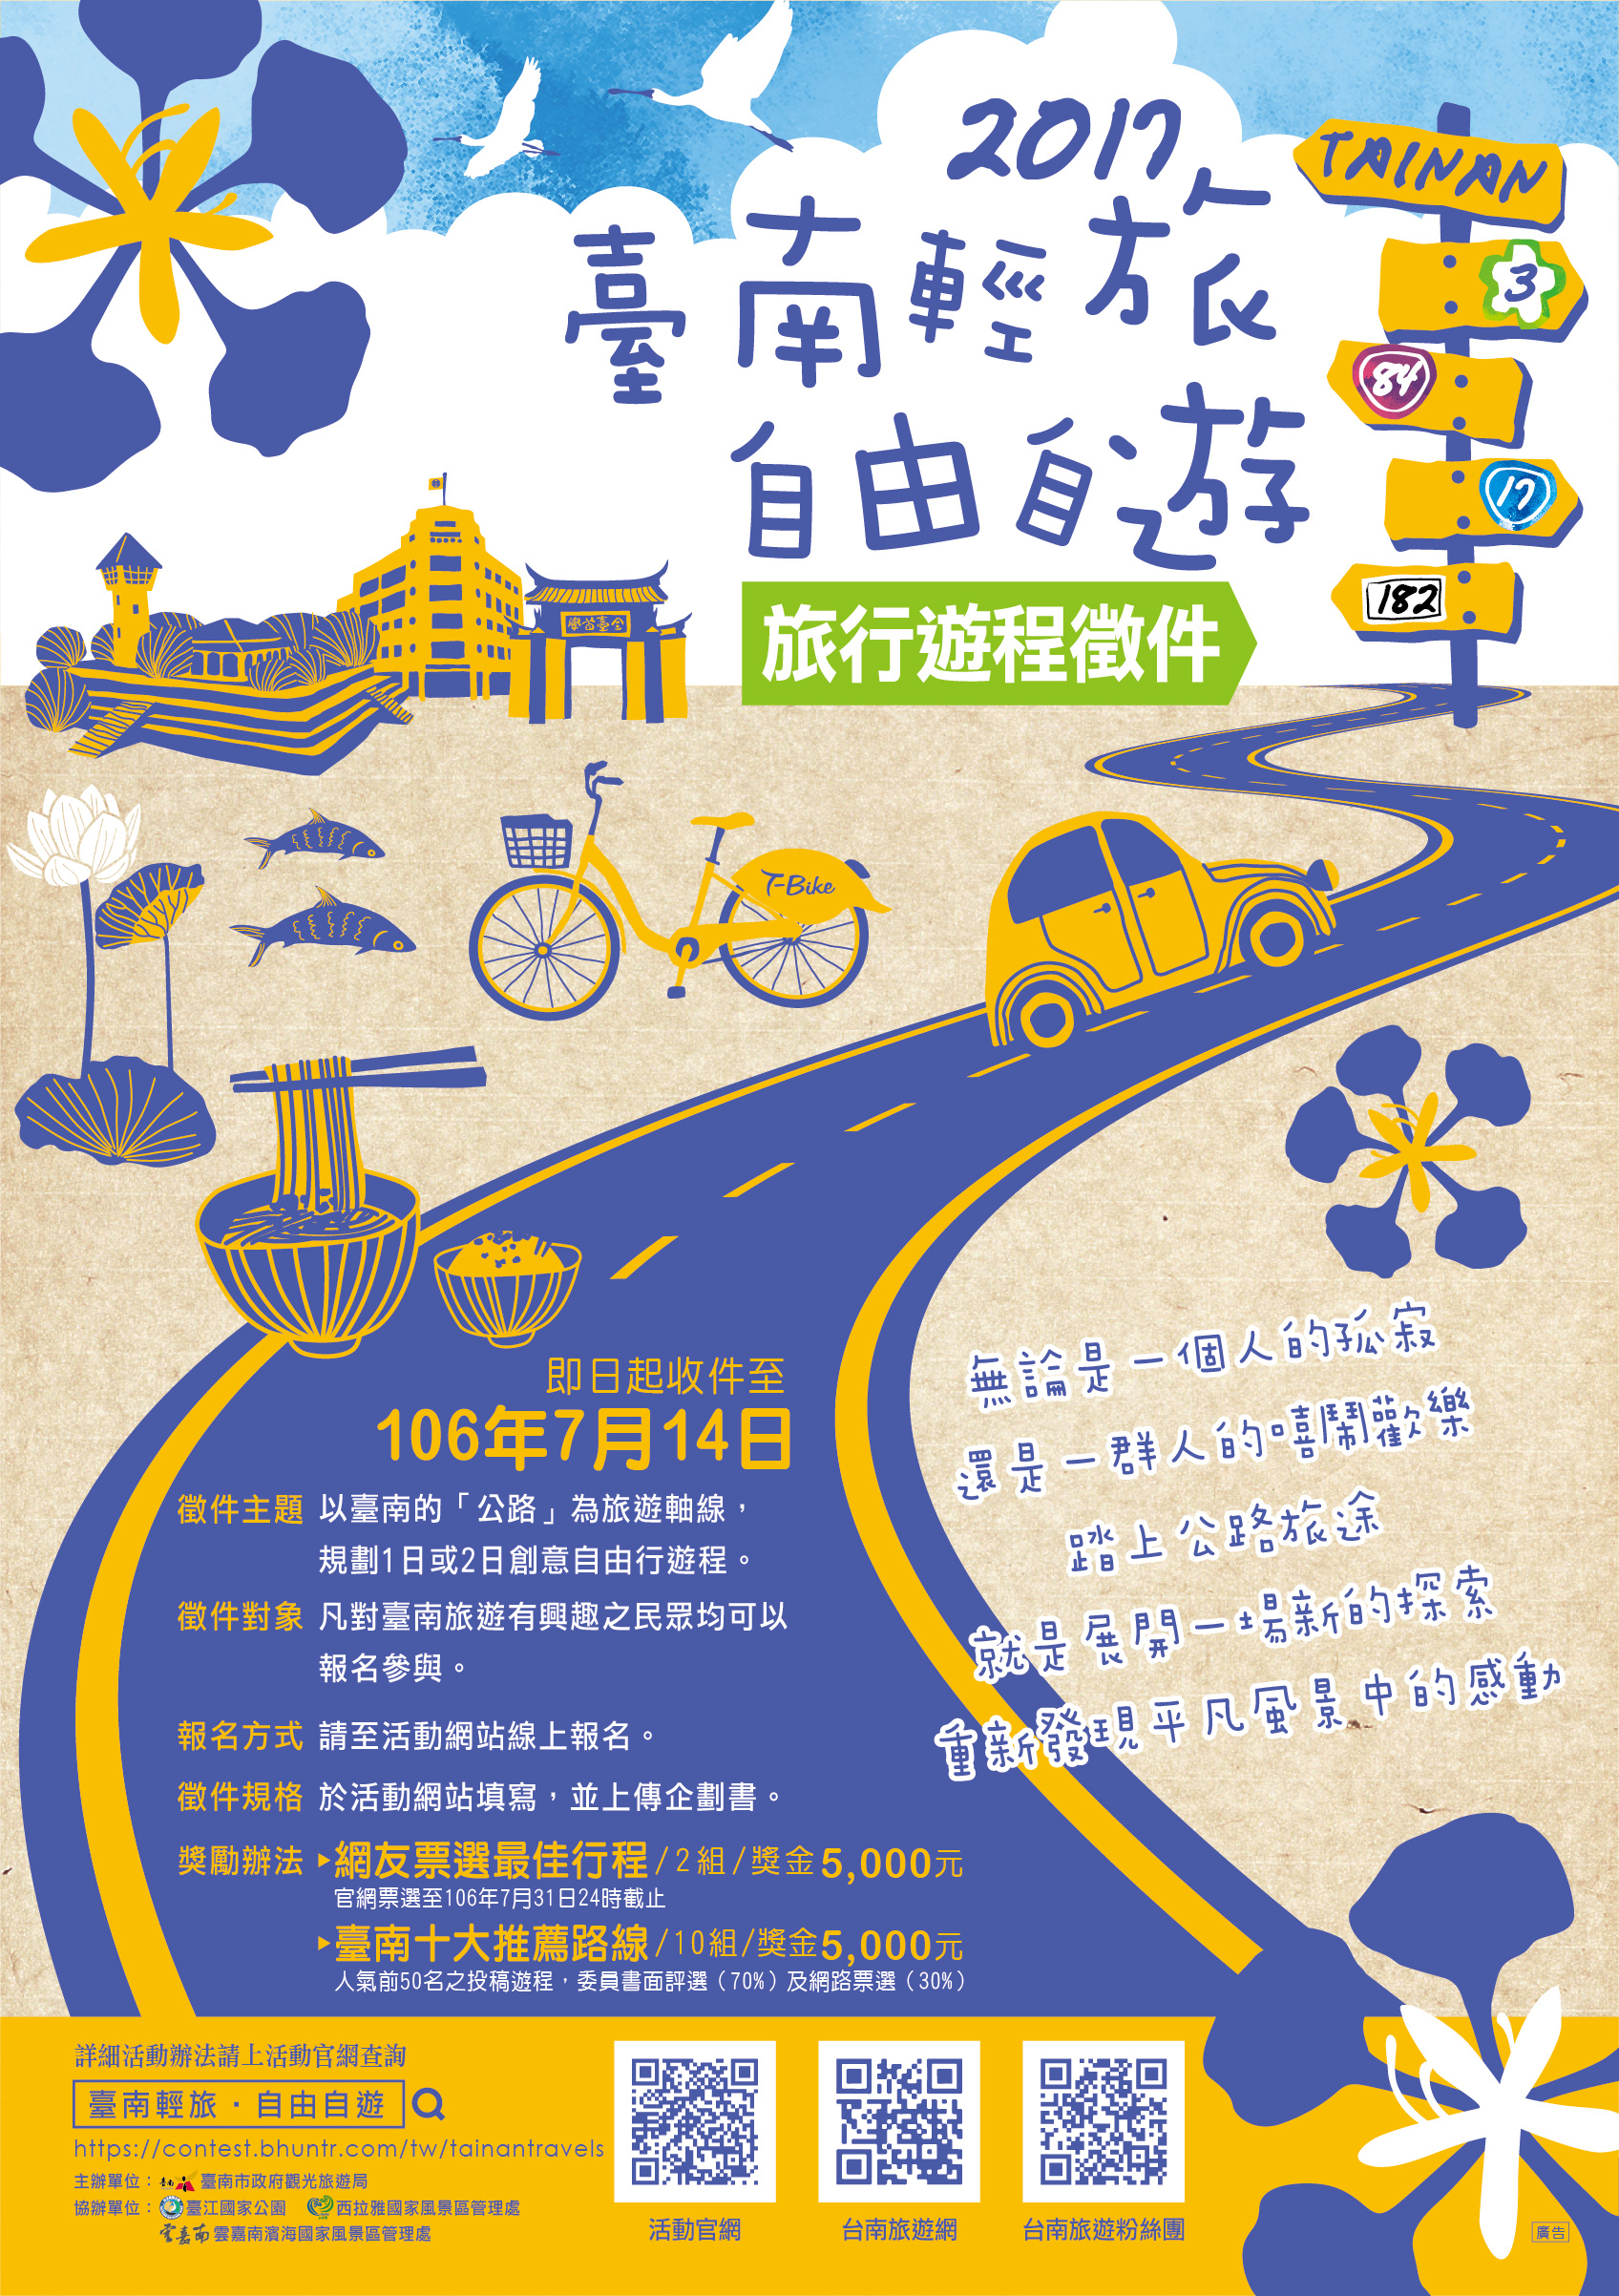 臺南輕旅 自由自遊旅行遊程徵件海報